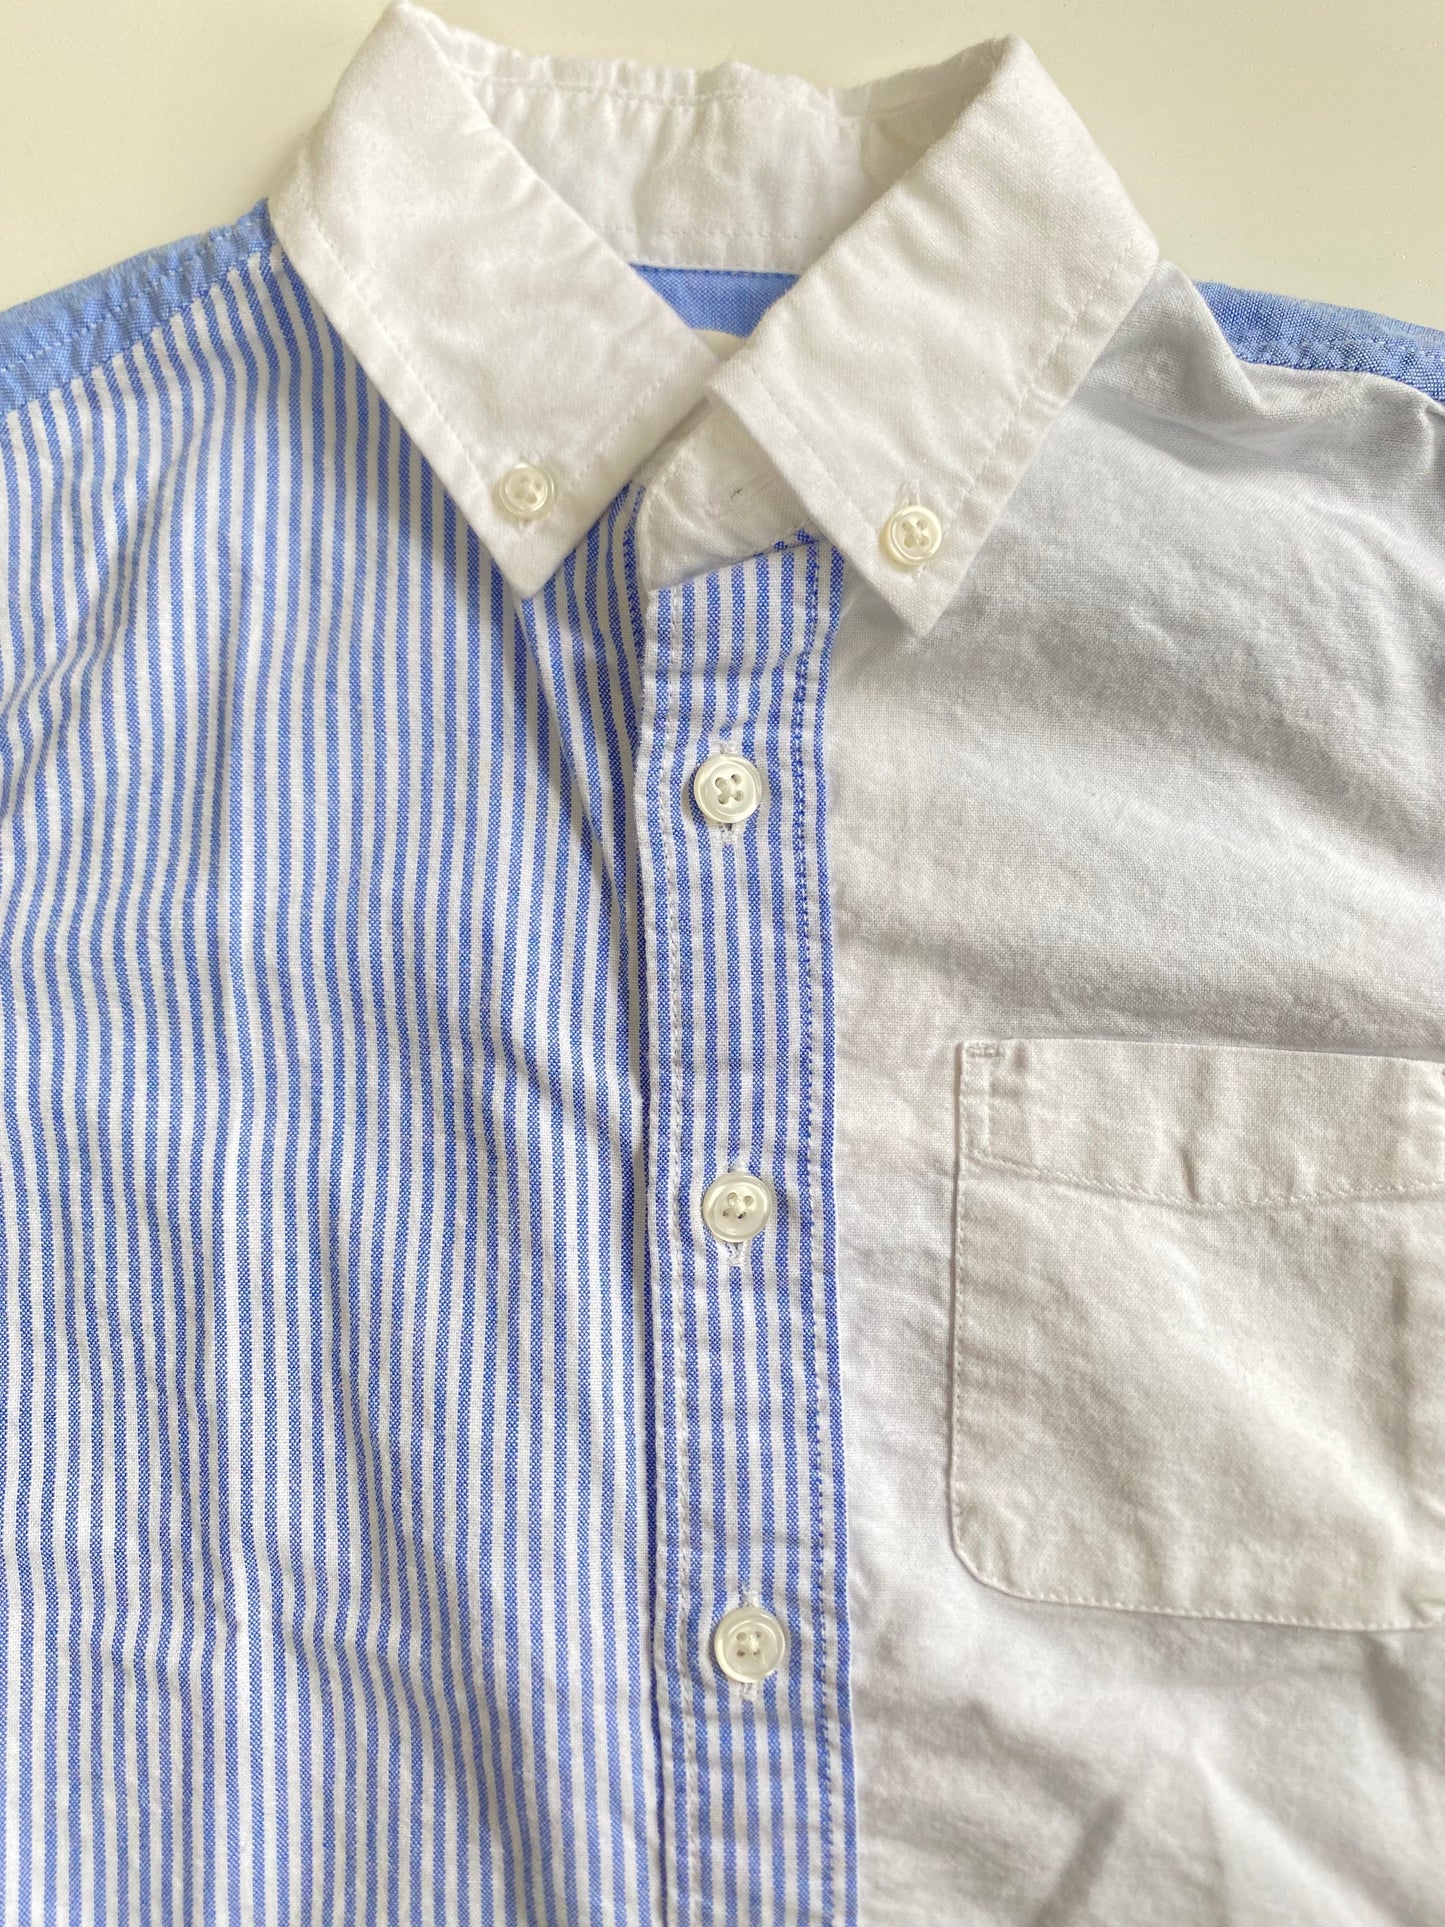 CREWCUTS bicolor shirt SS / 4-5Y